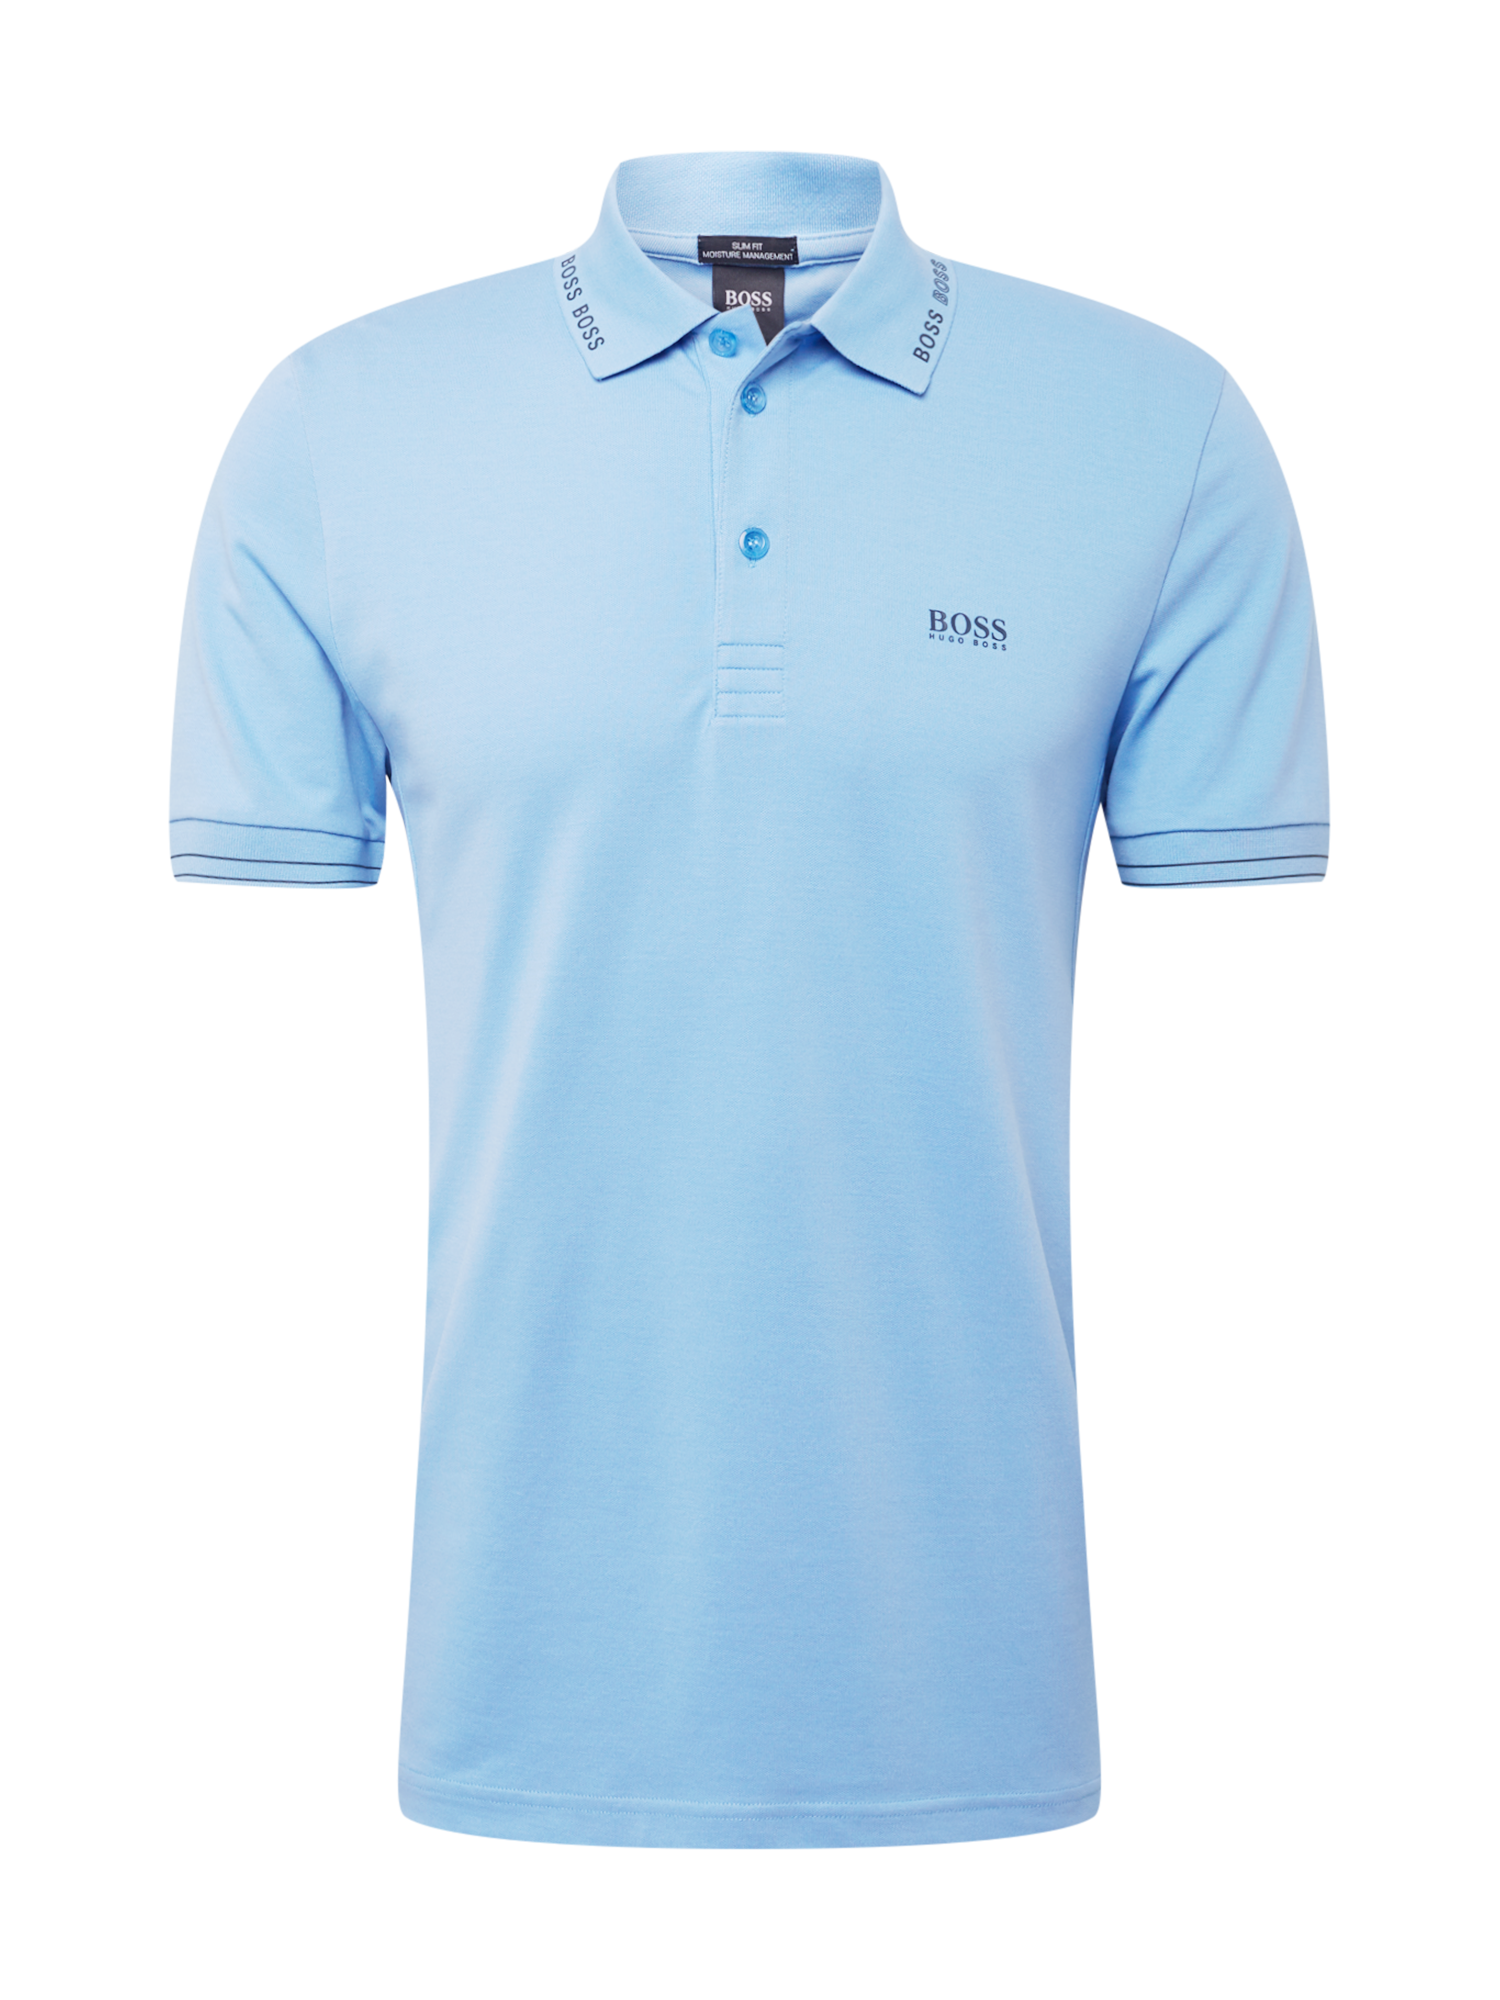 Premium Odzież BOSS ATHLEISURE Koszulka Paule w kolorze Jasnoniebieski, Granatowym 